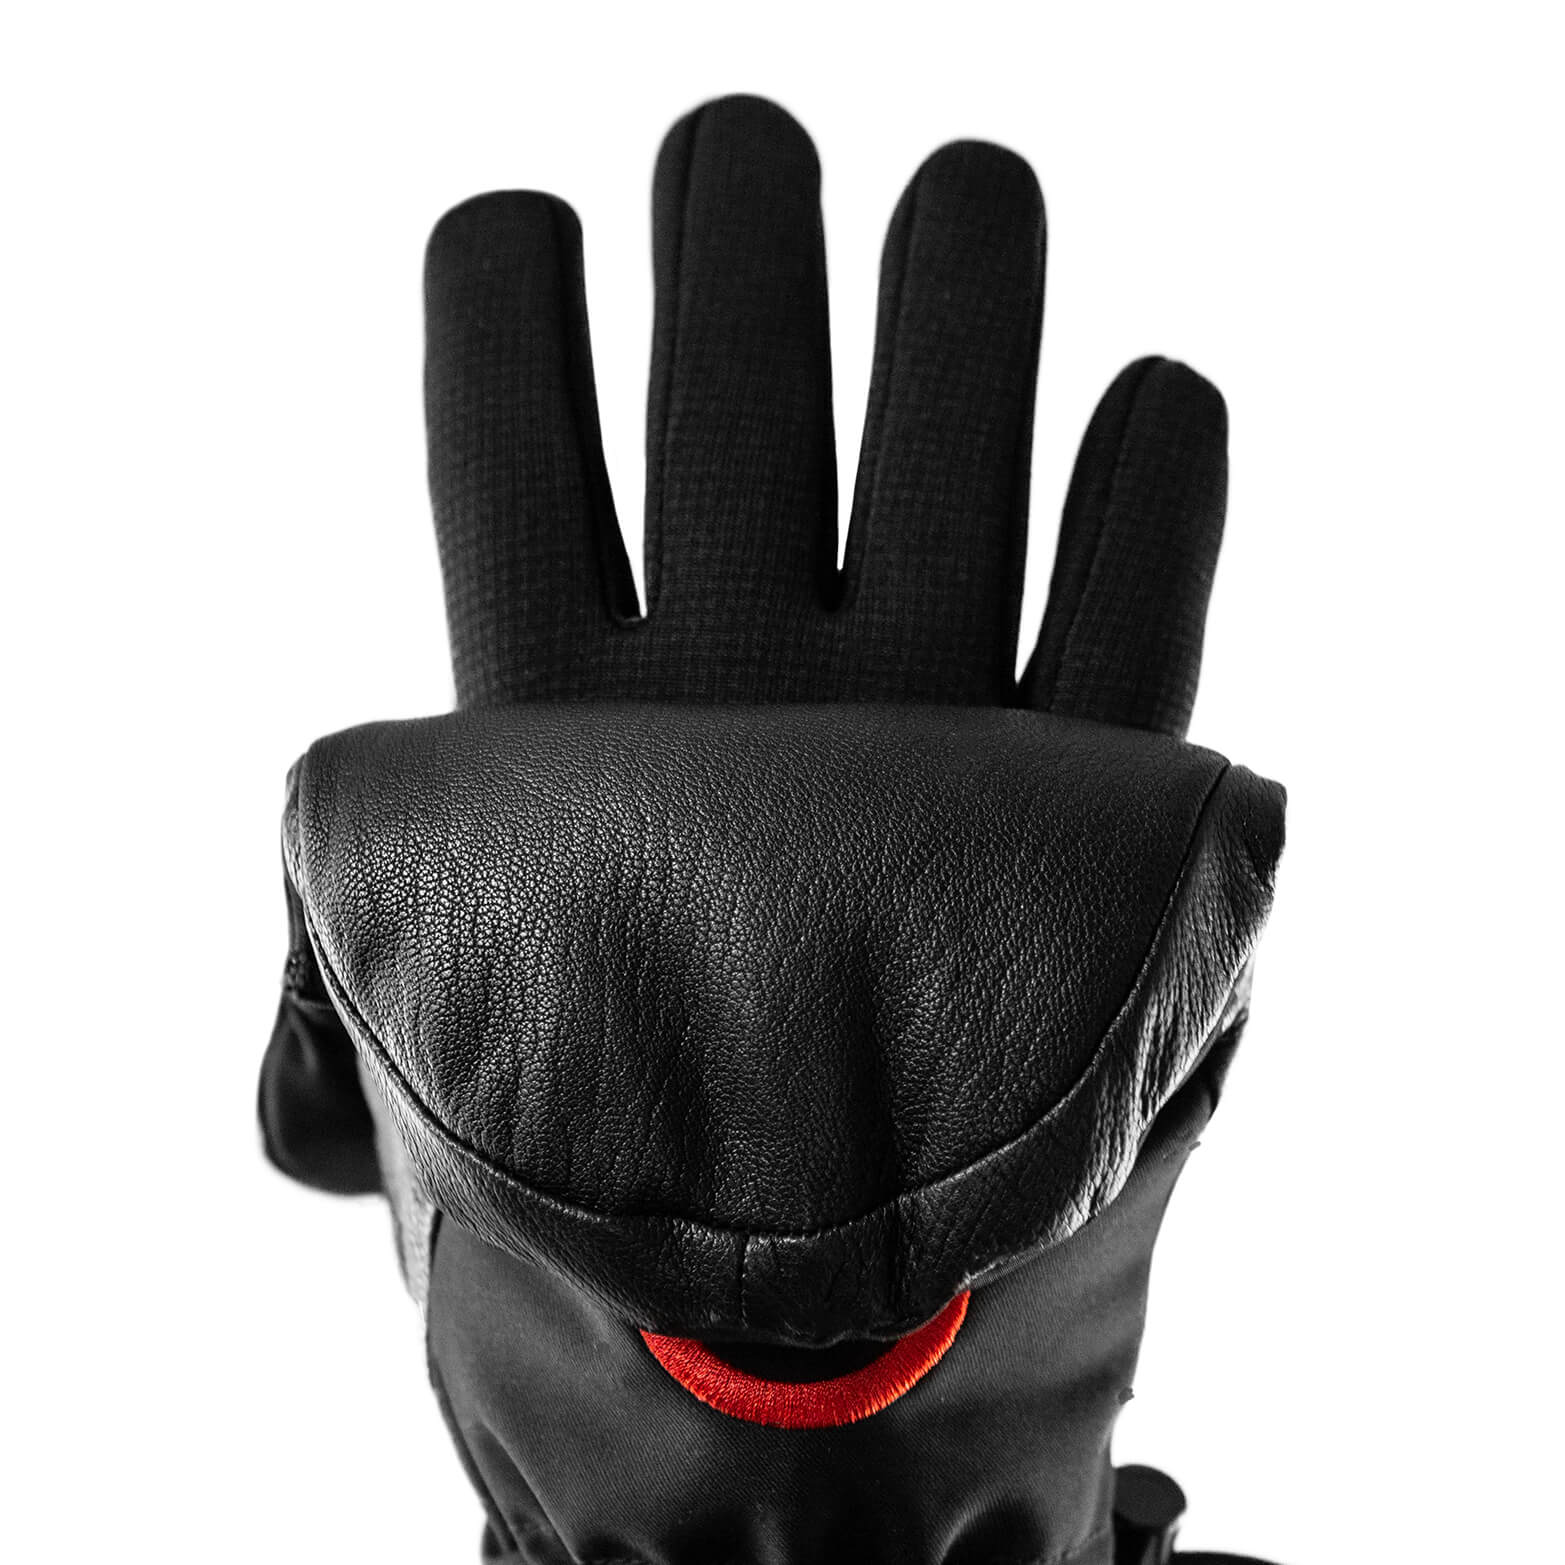 esquí. THE HEAT COMPANY Heat 3 Smart Ideal para manipular manoplas simplemente dobladas No.1 Guantes fotográficos Guantes de dedos y manoplas en uno Los guantes innovadores